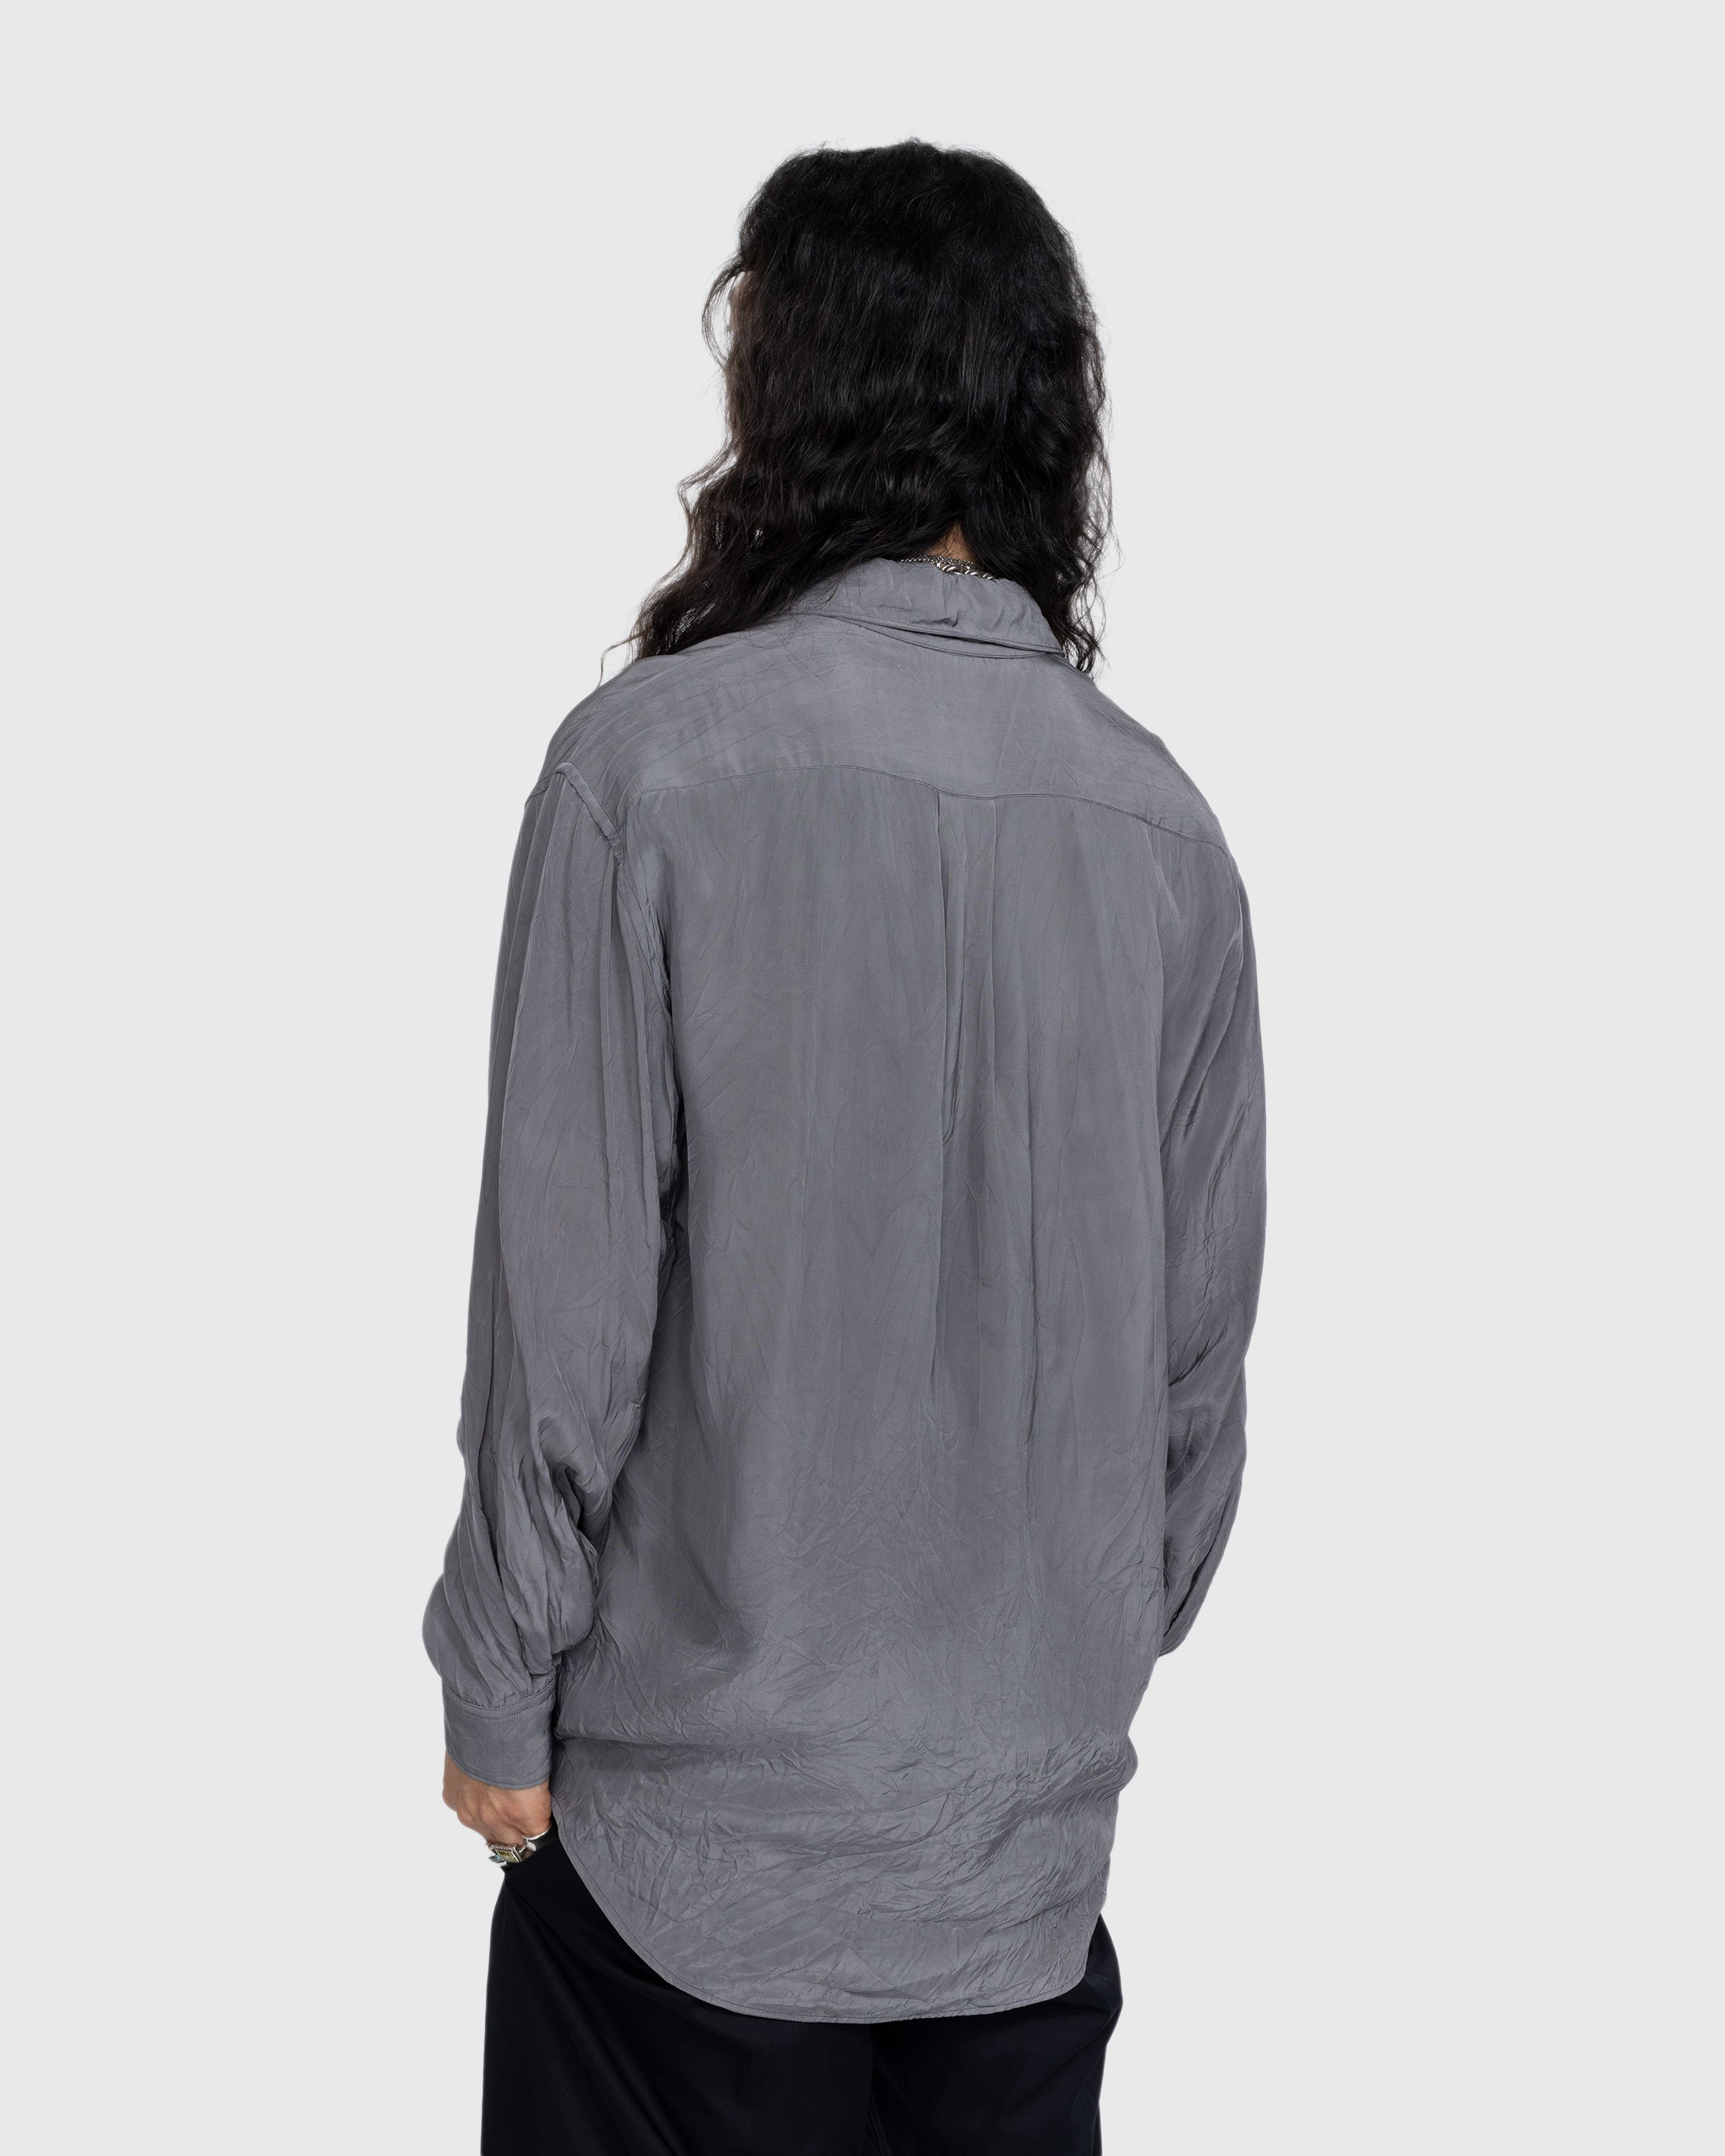 Lemaire - Crinkled Longsleeve Shirt Aluminum - Clothing - Grey - Image 3